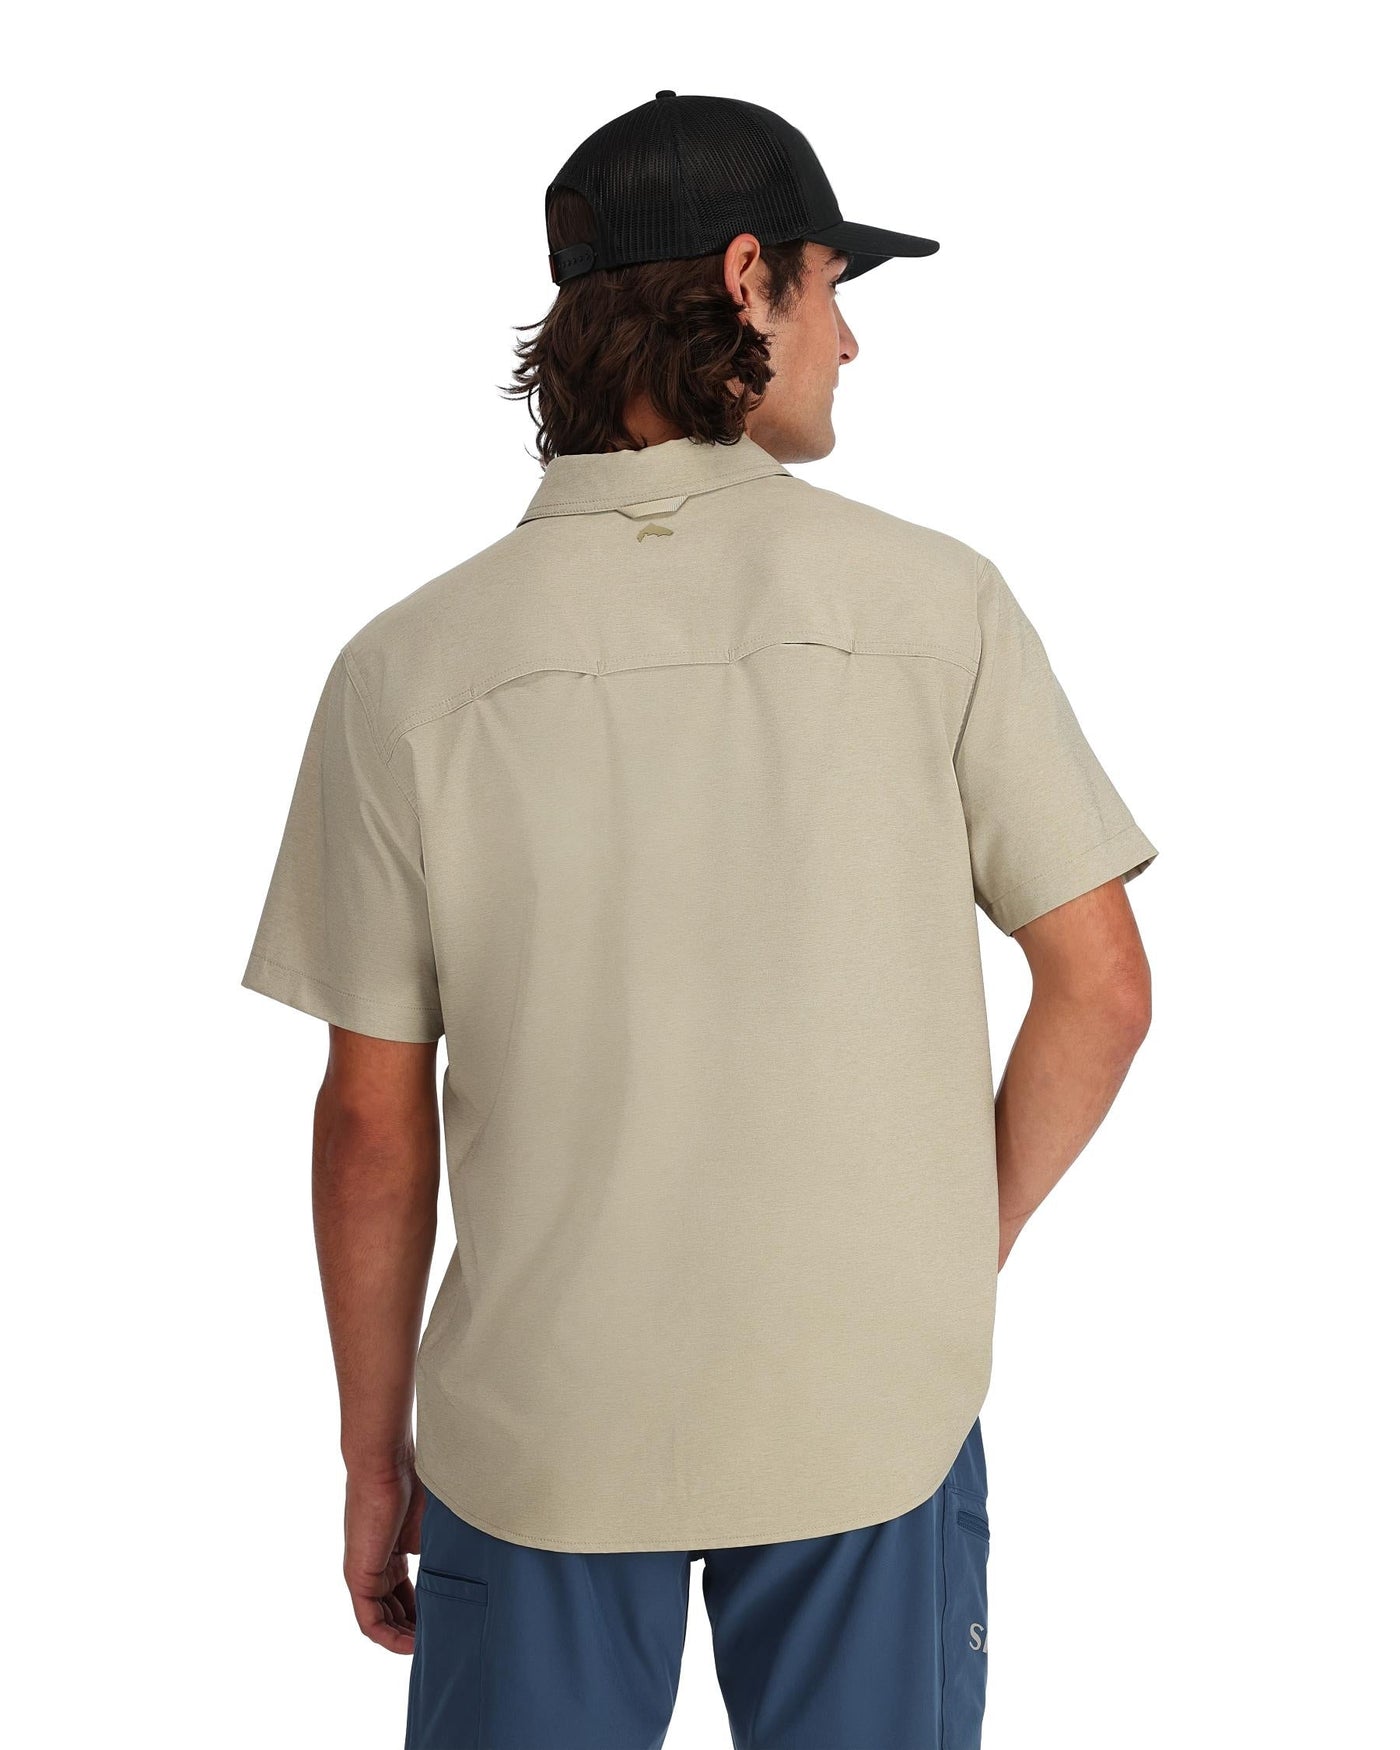 Simms Men's Challenger LS Shirt - XL - Cinder